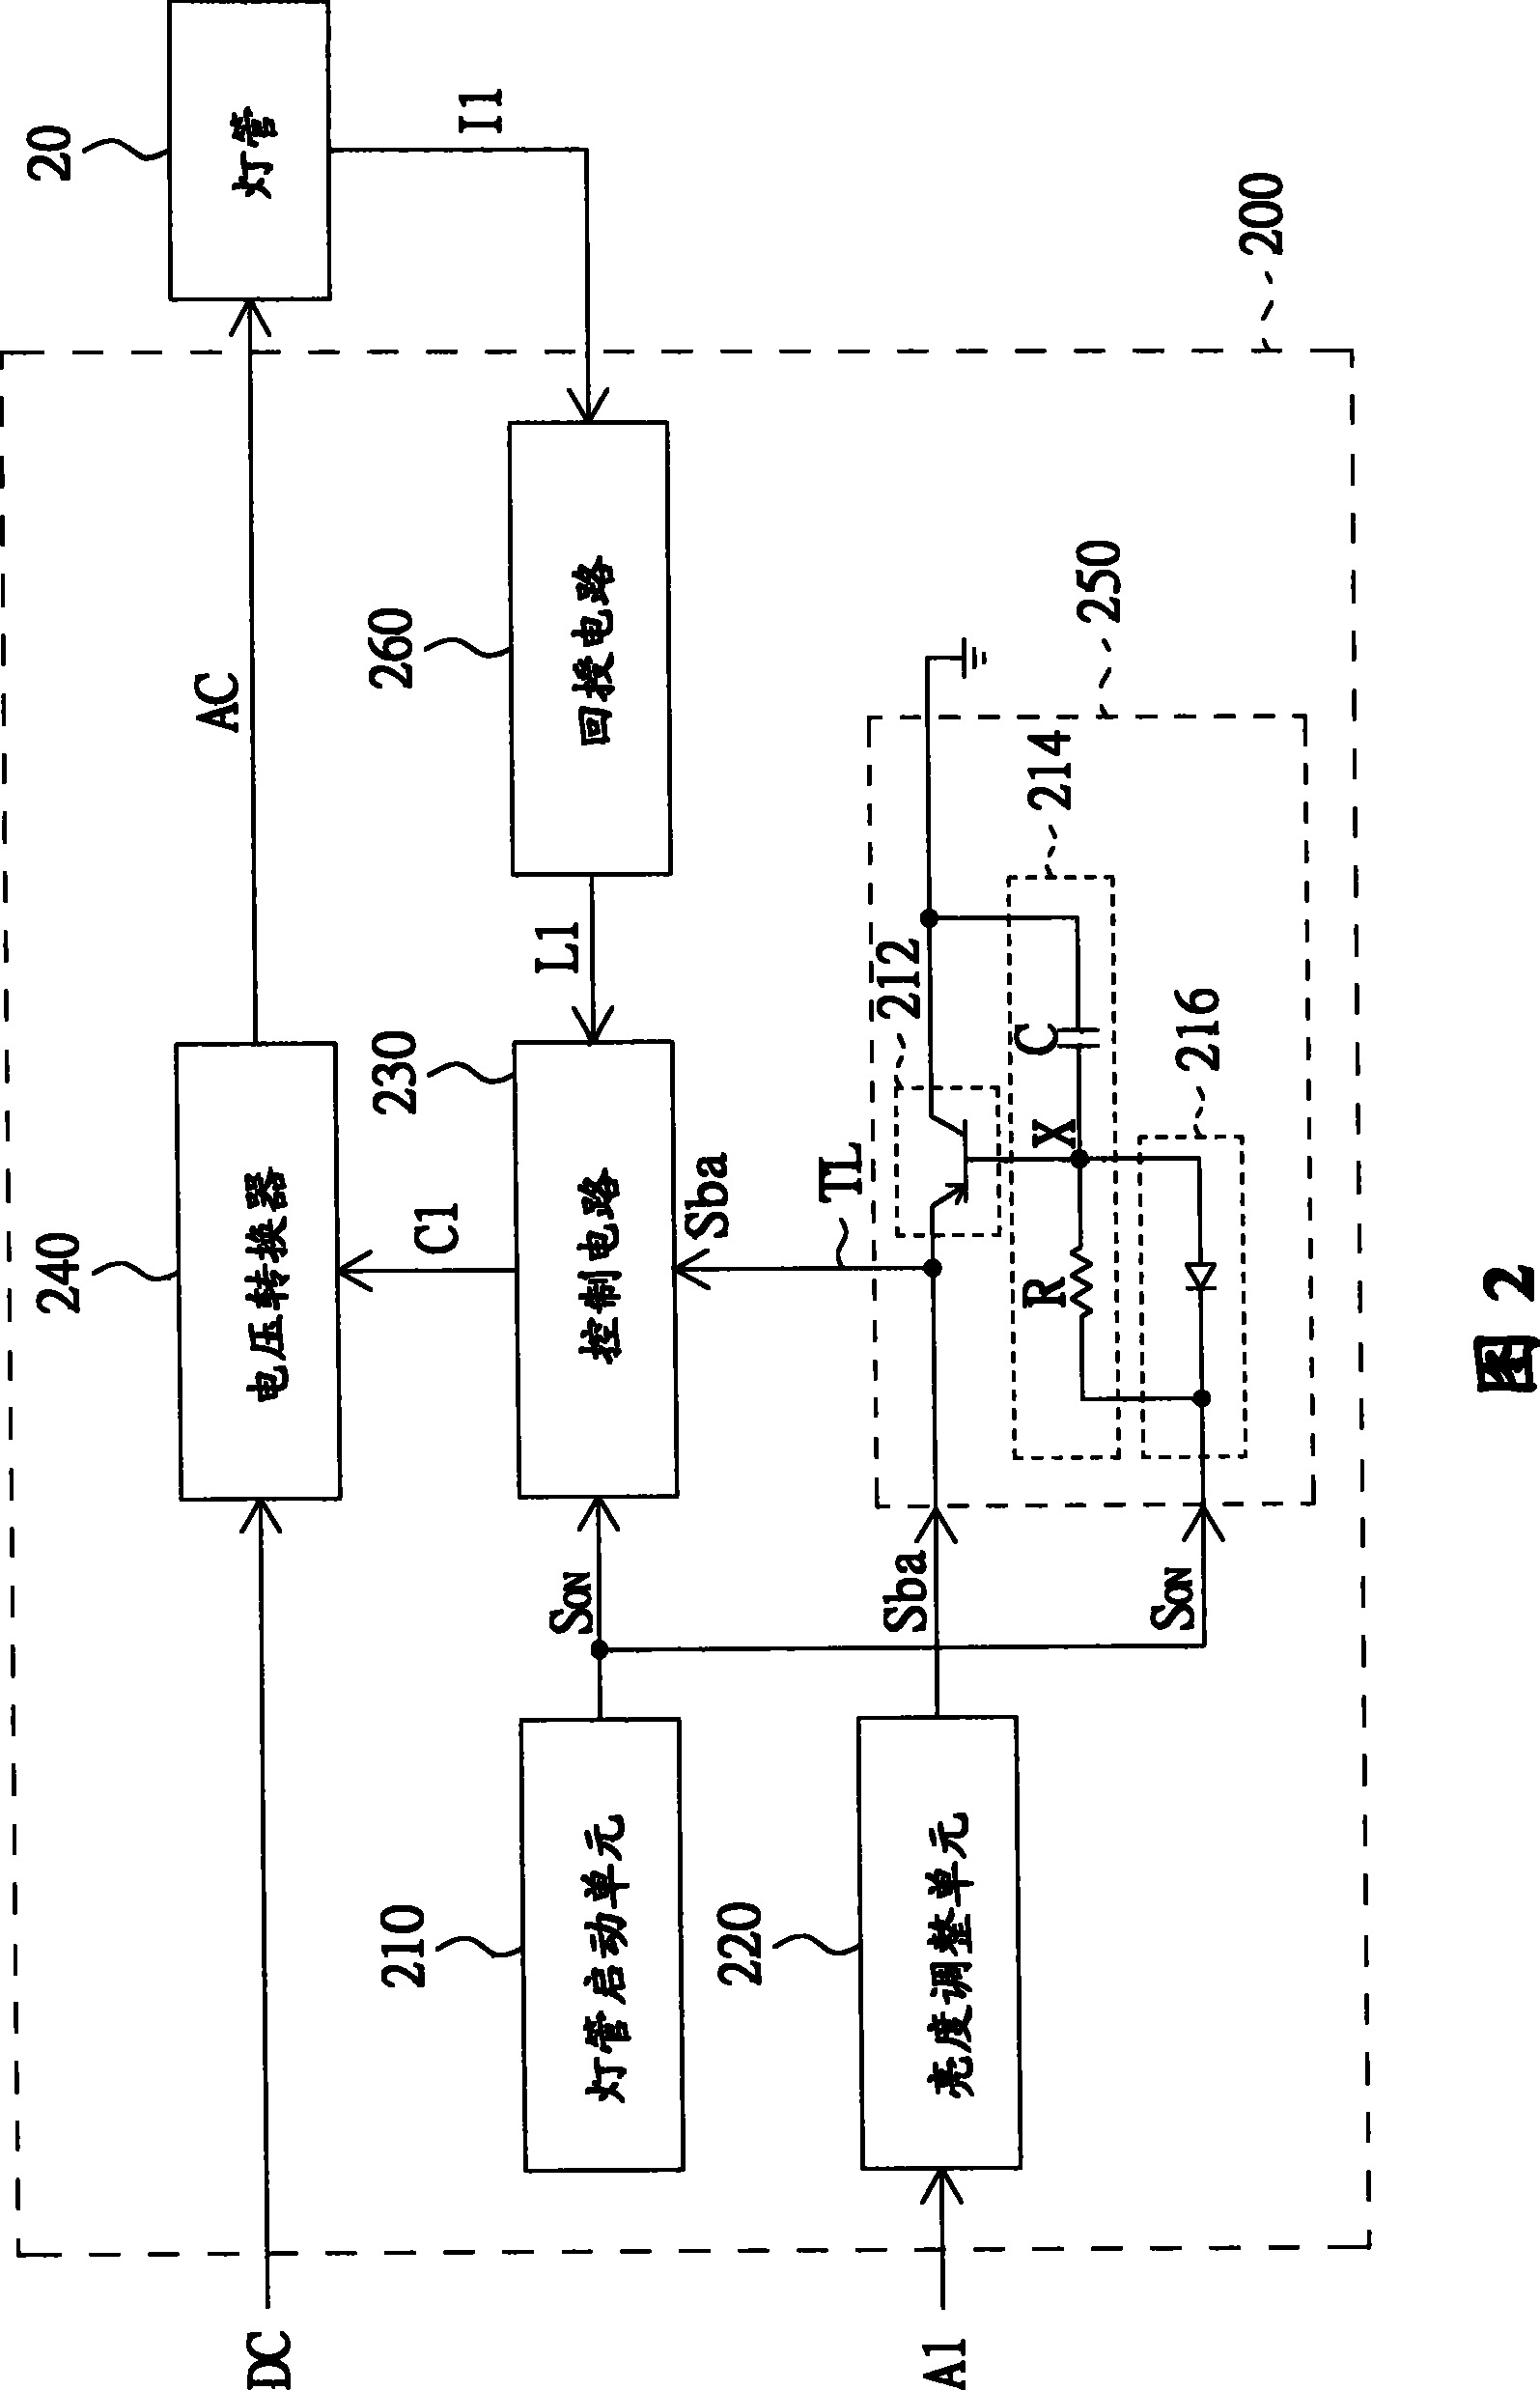 Power supply system for cold cathode tube and light tube start method